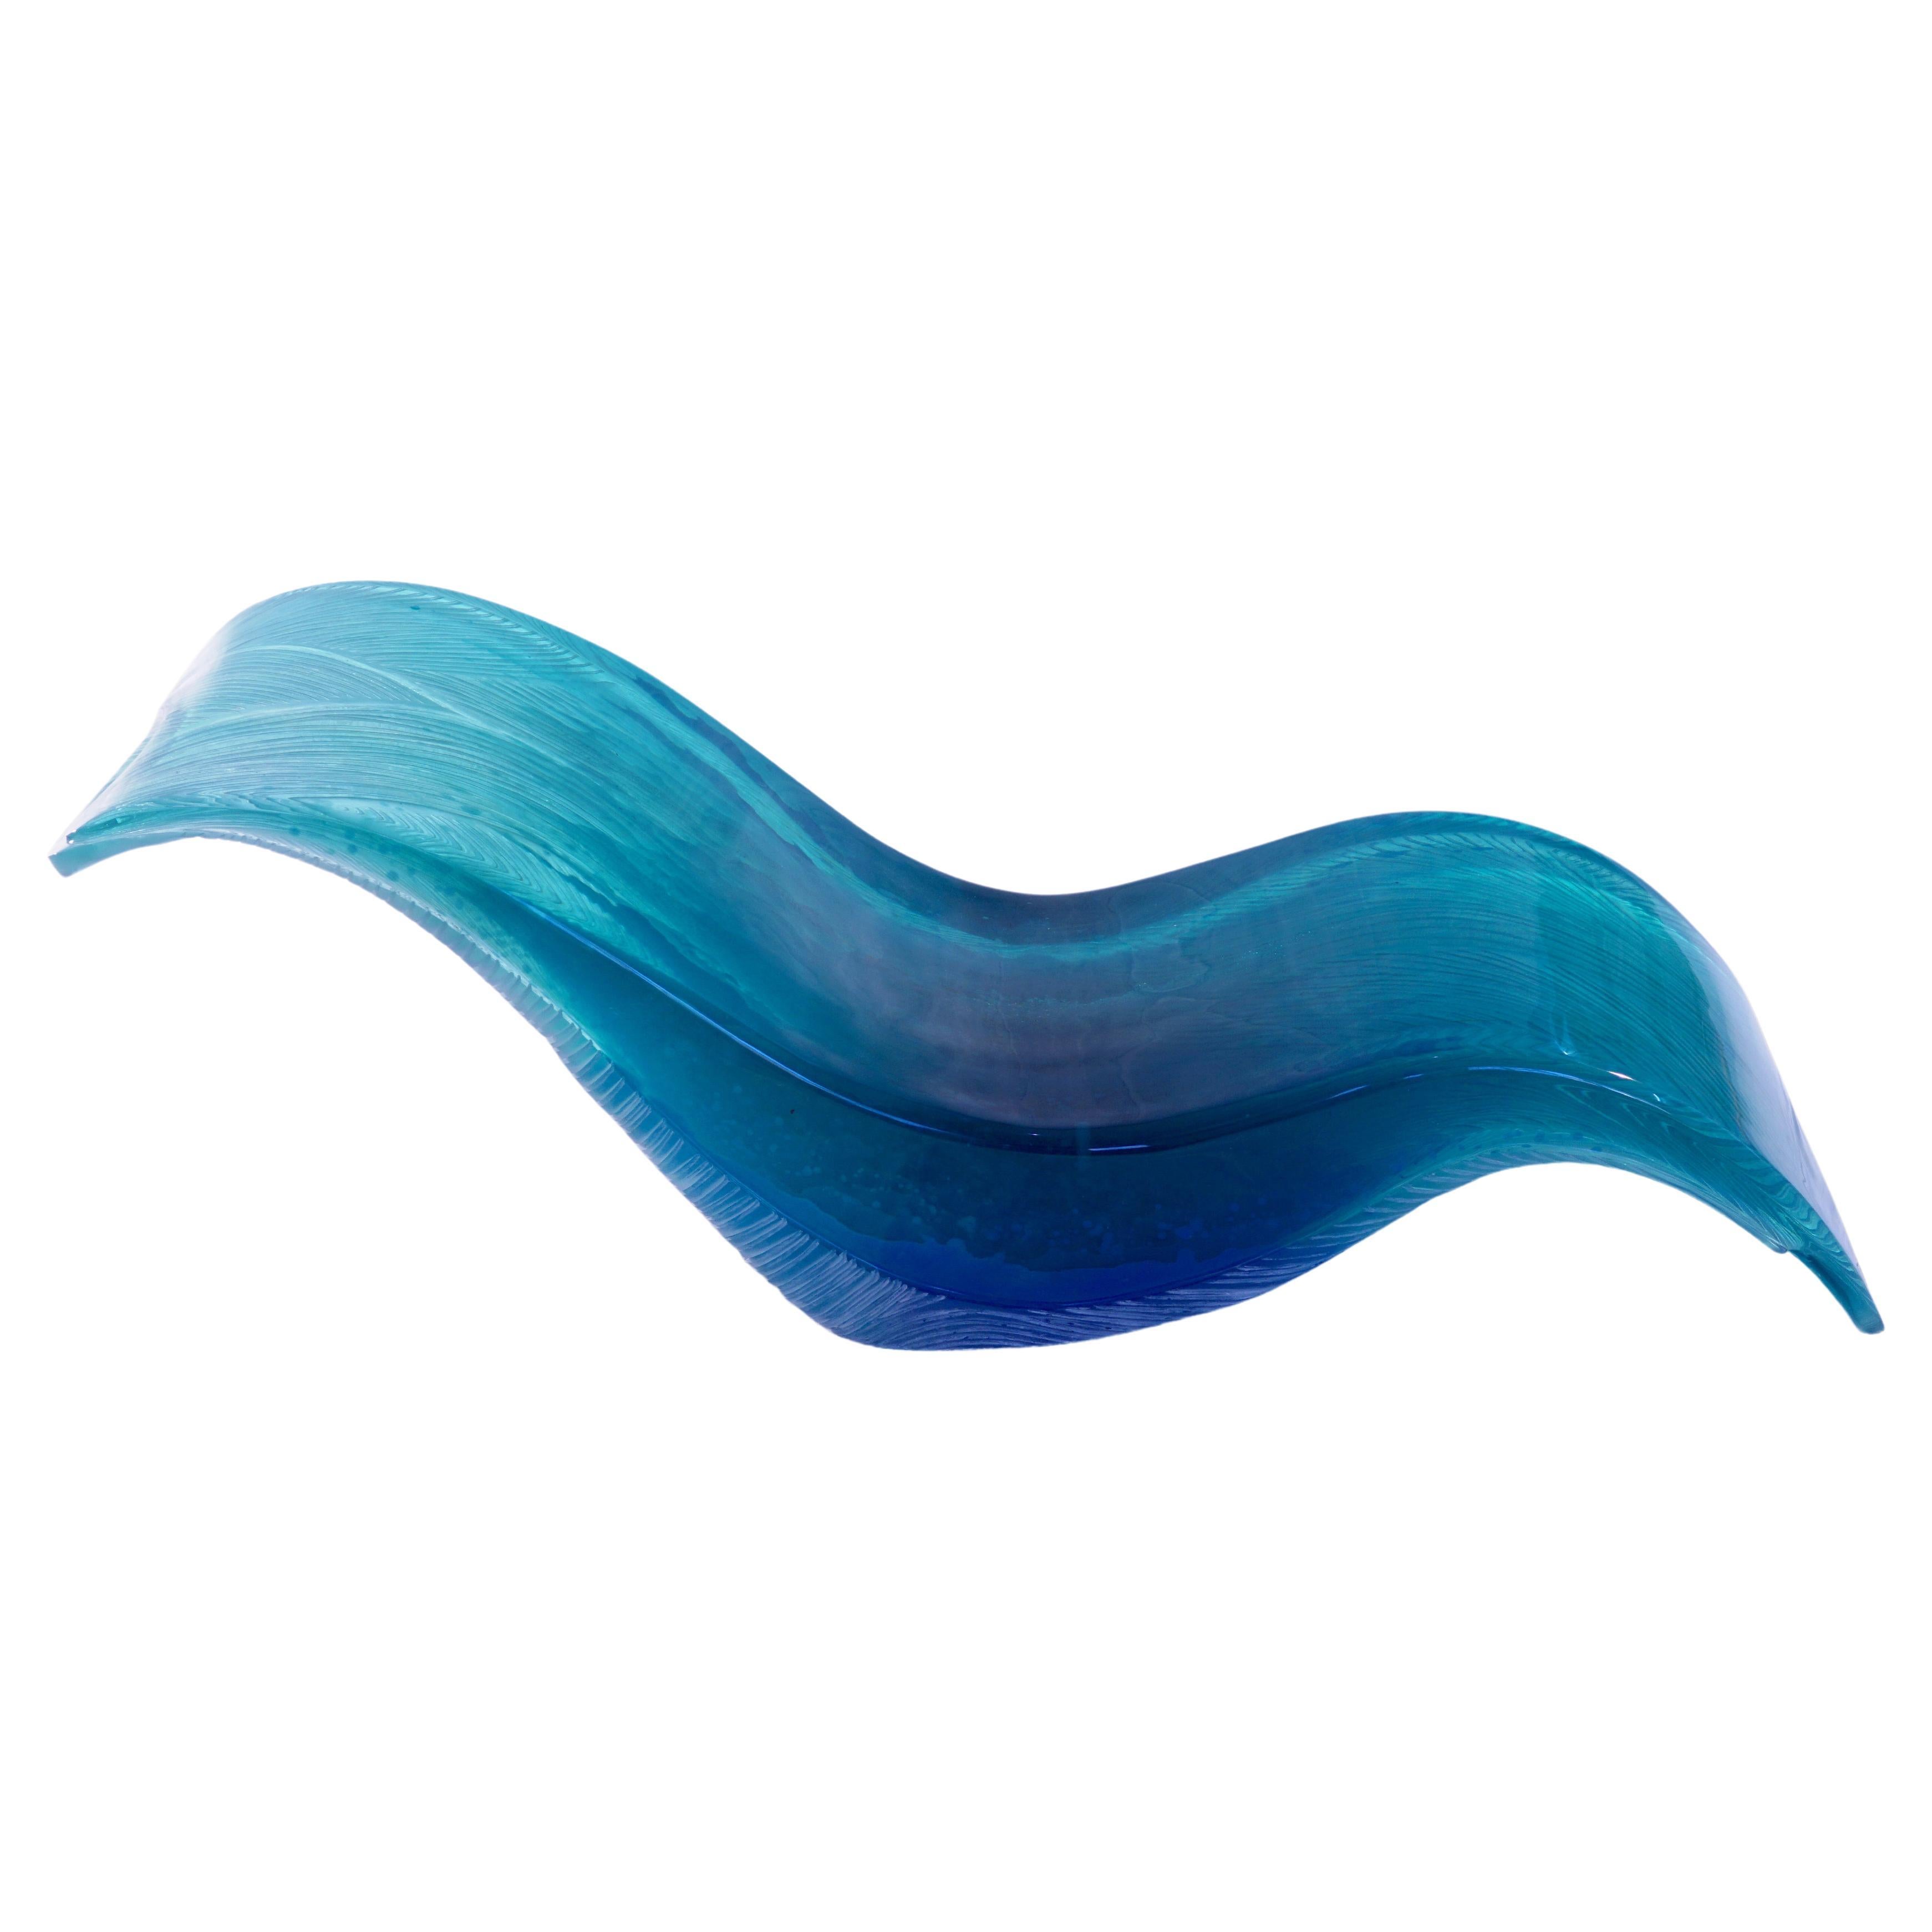 Wave Lounge d'Eduard Locota. Conception sculpturale en verre acrylique bleu turquoise en vente